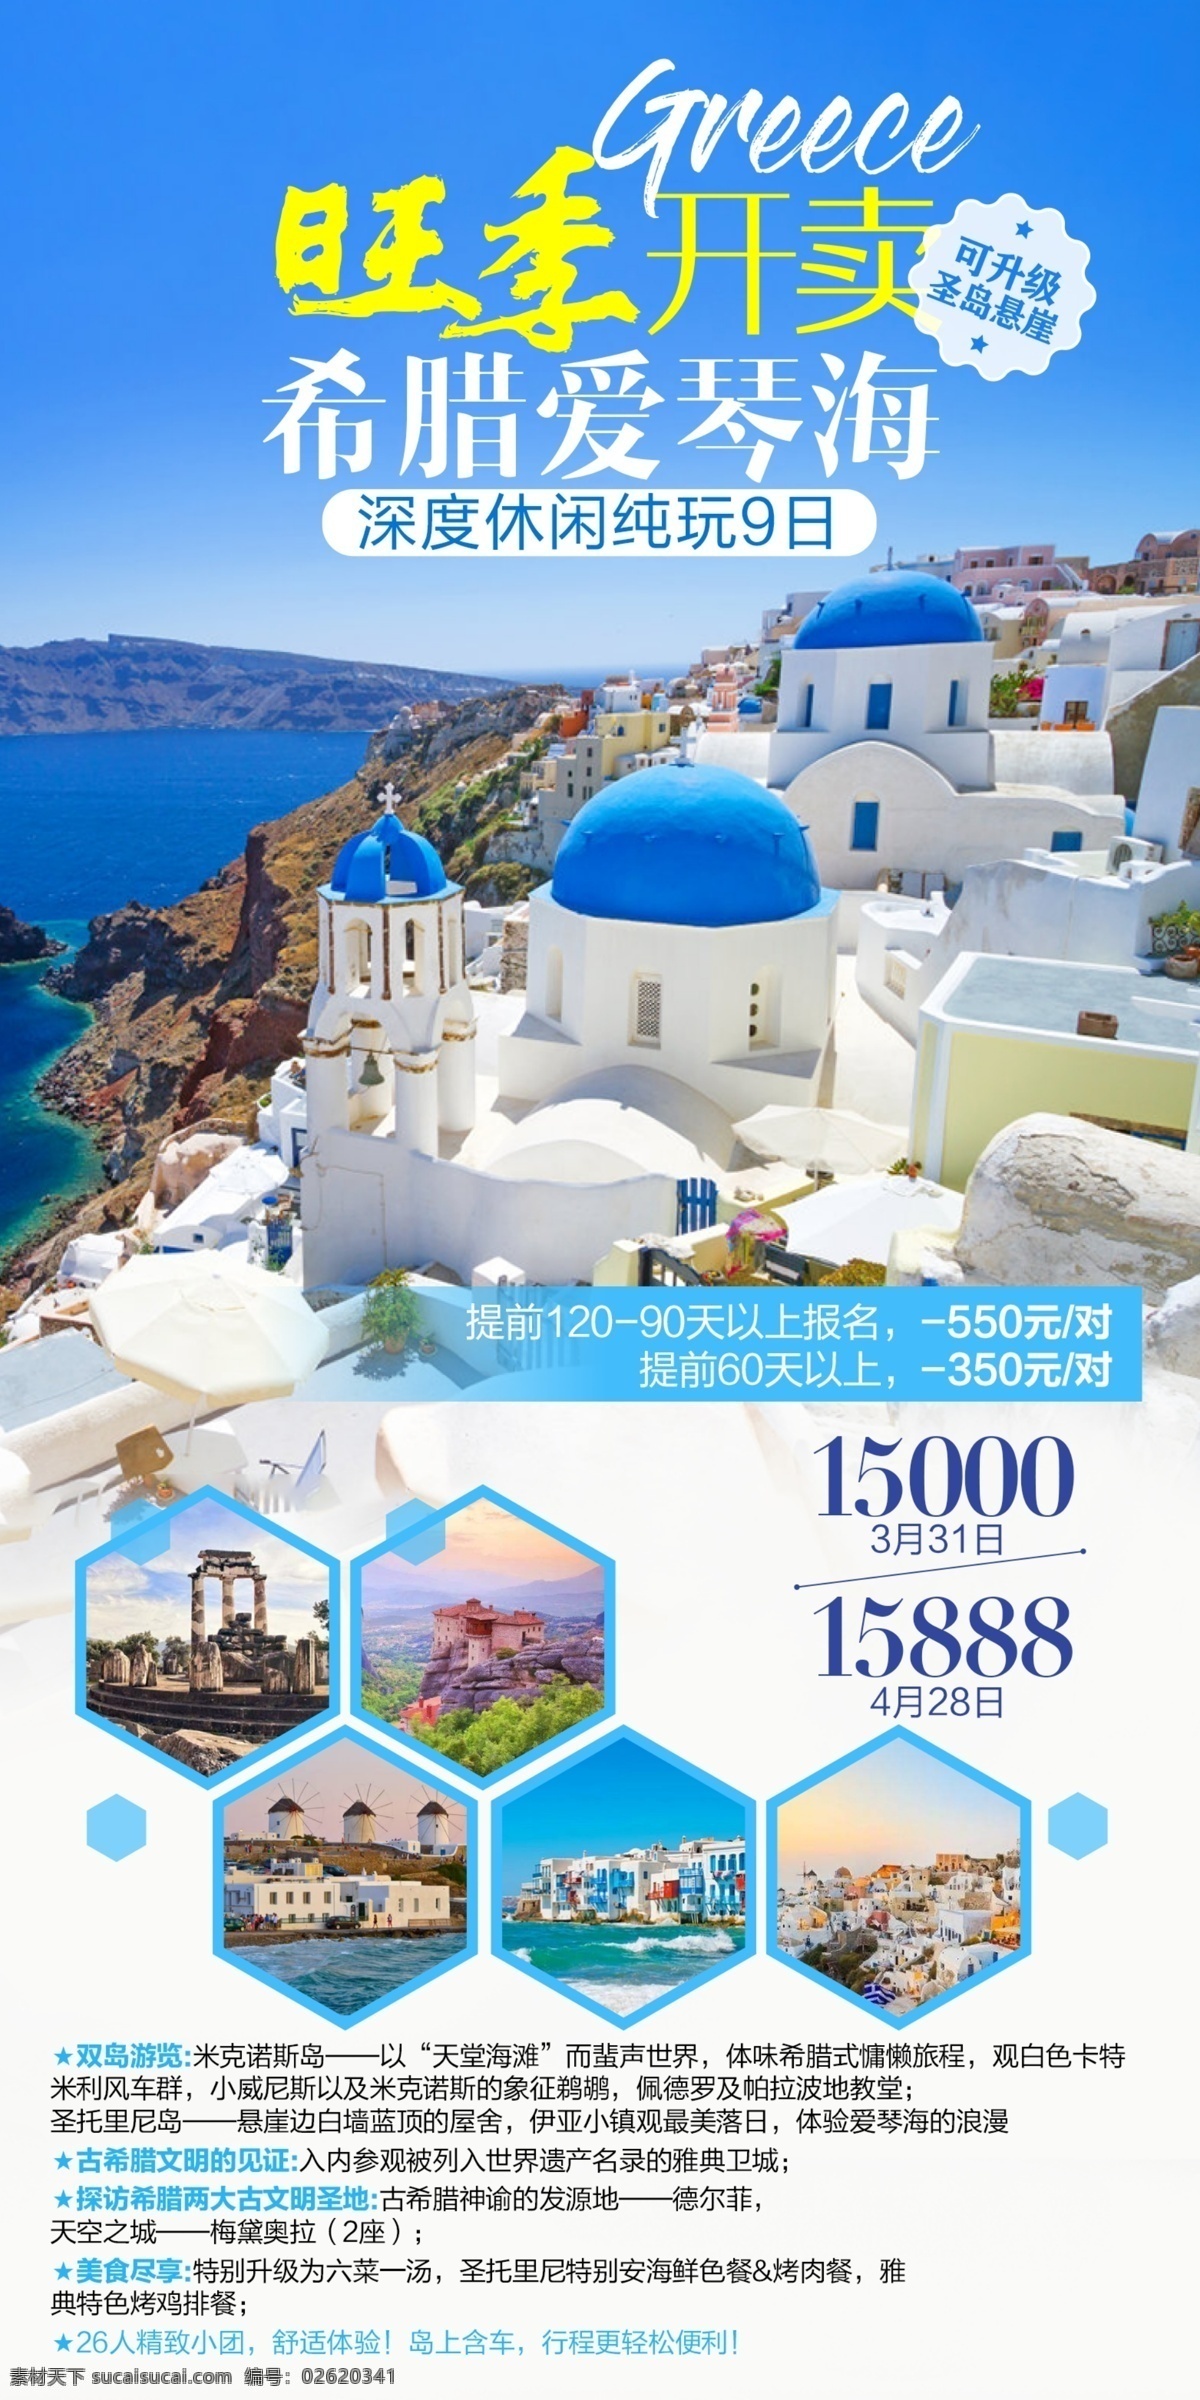 希腊 特价 广告 图 出境游 海边 微信 朋友圈 蓝色 小清新 旅游